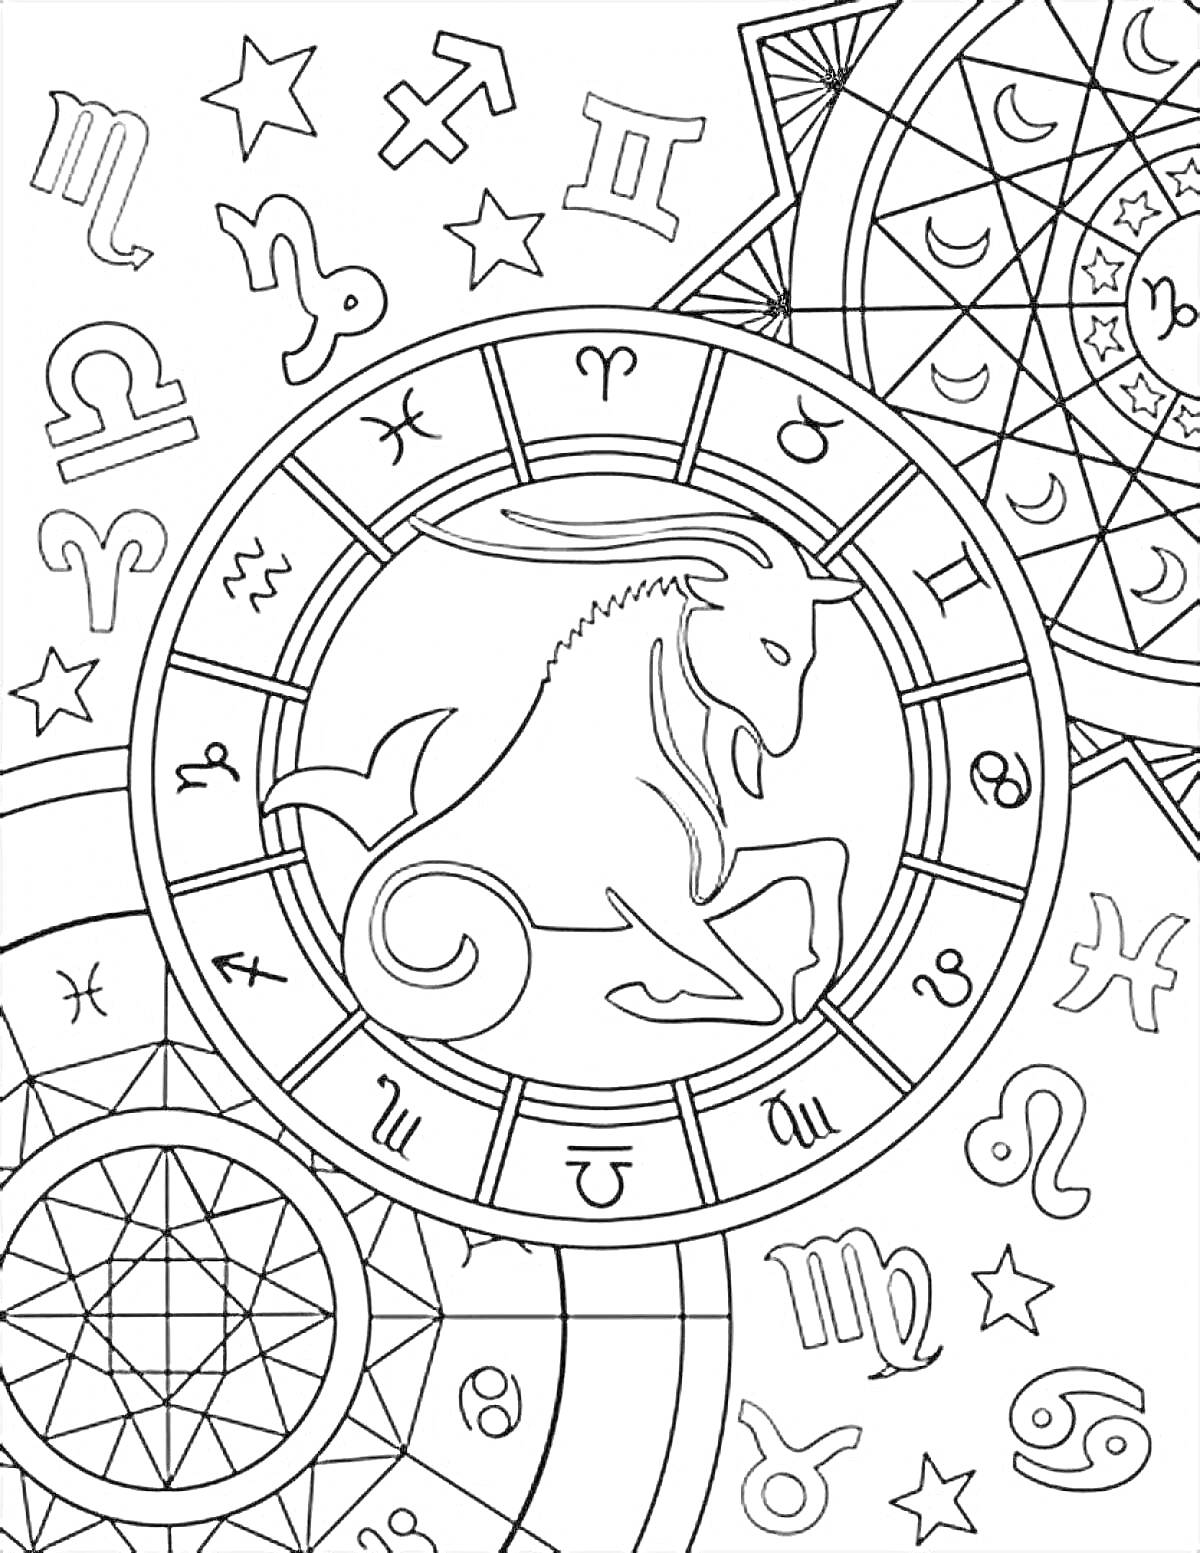 Раскраска Овен, символы зодиака, звезды, созвездия, геометрические фигуры